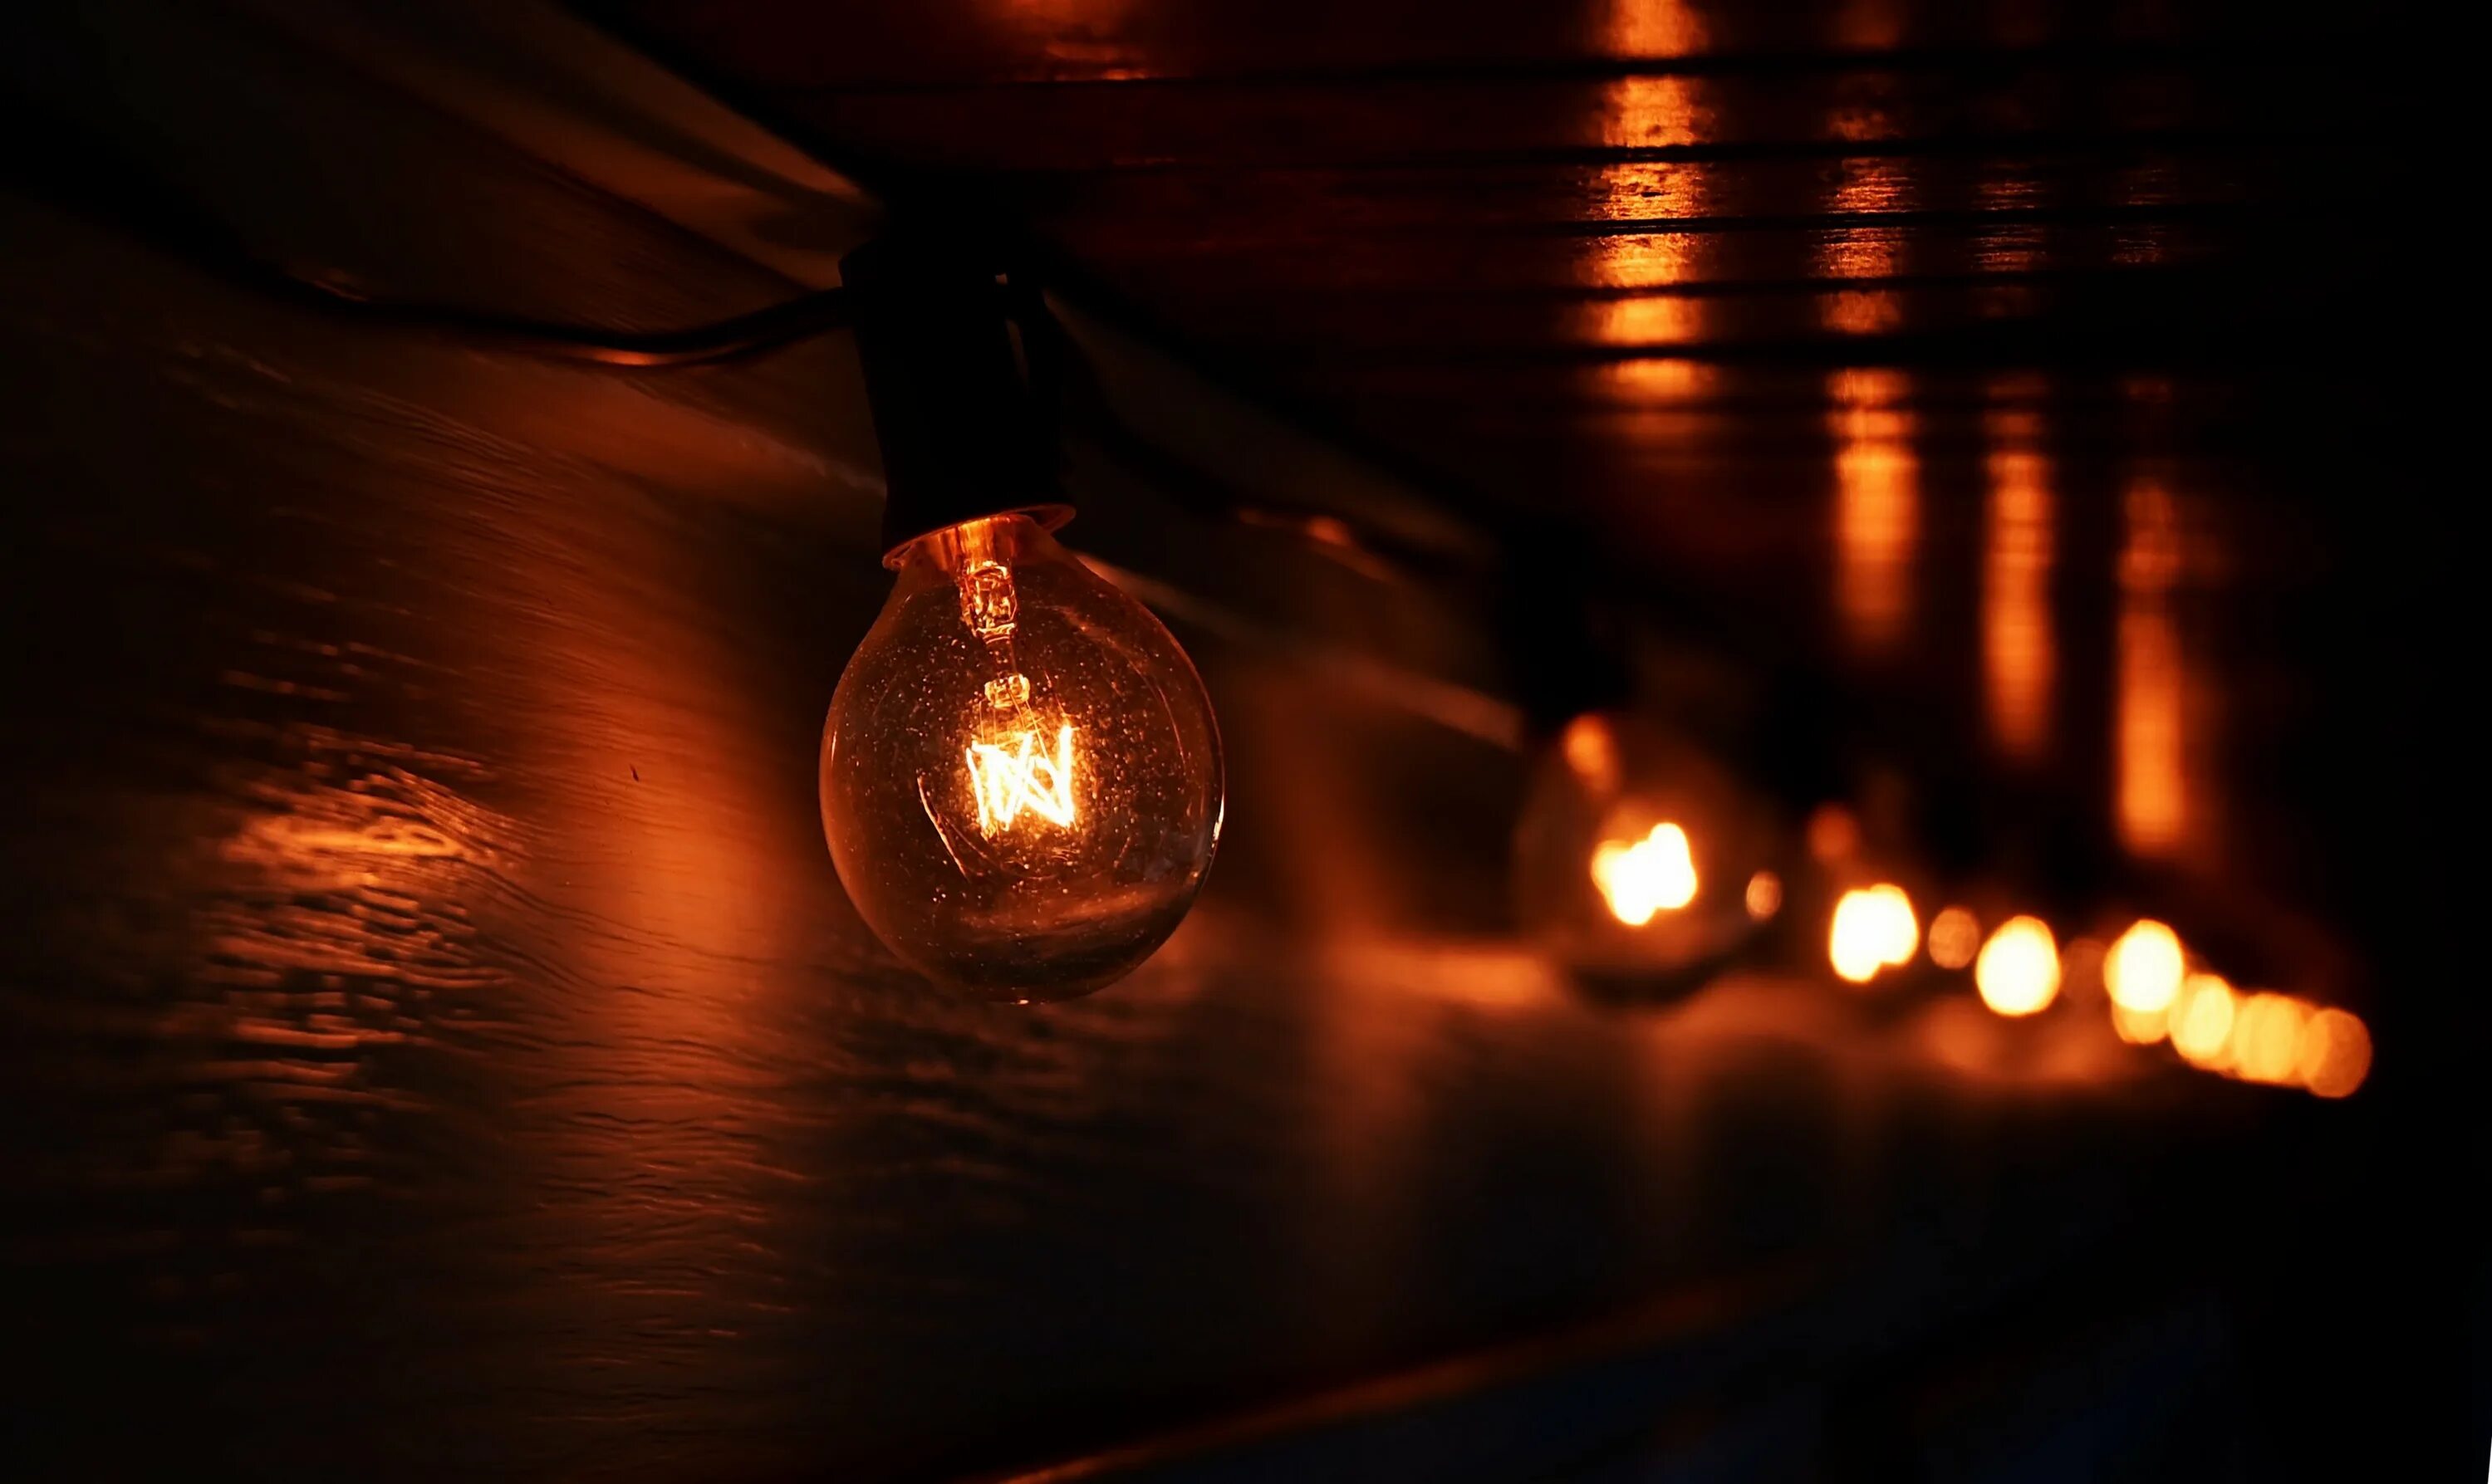 Поставь свет потеплее. Свет лампочки. Лампочка Эдисона. Ламповое освещение. Декоративные лампы.